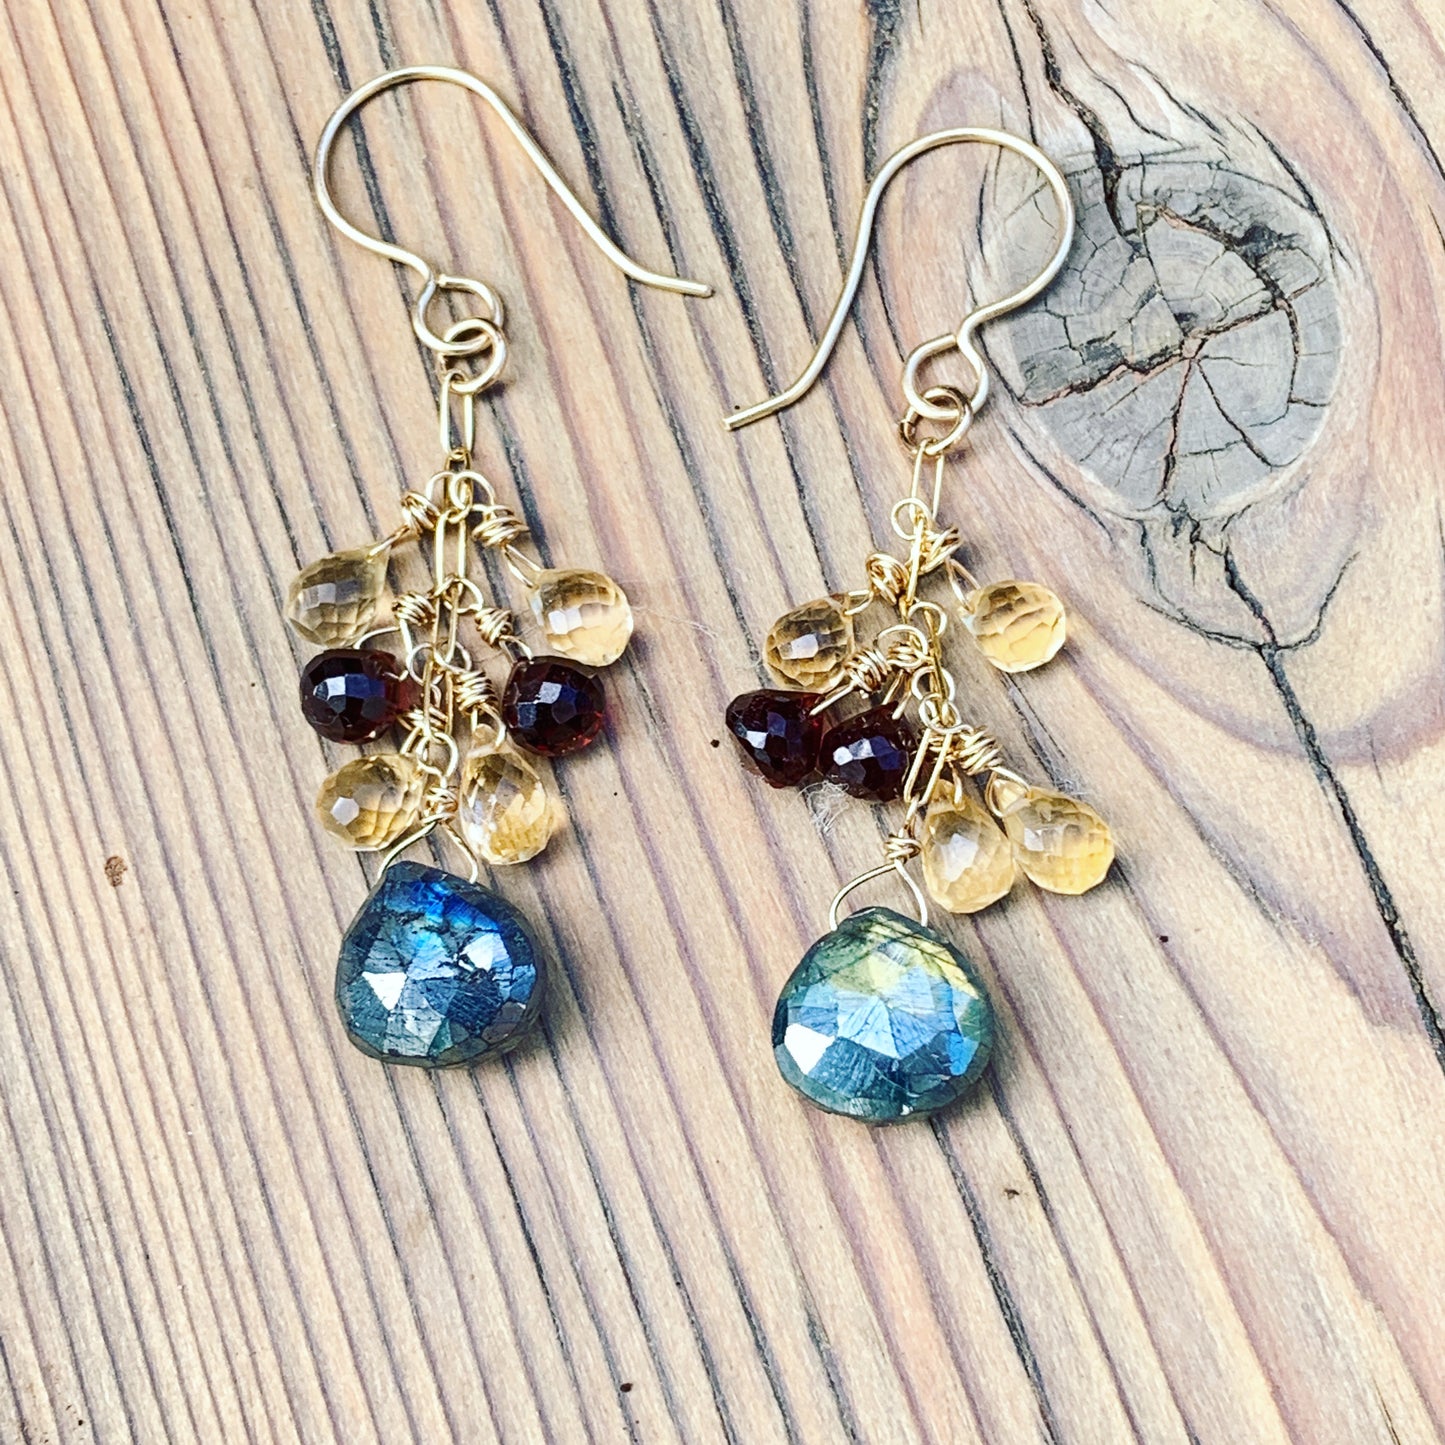 Gemstones Drop Merlot Earrings